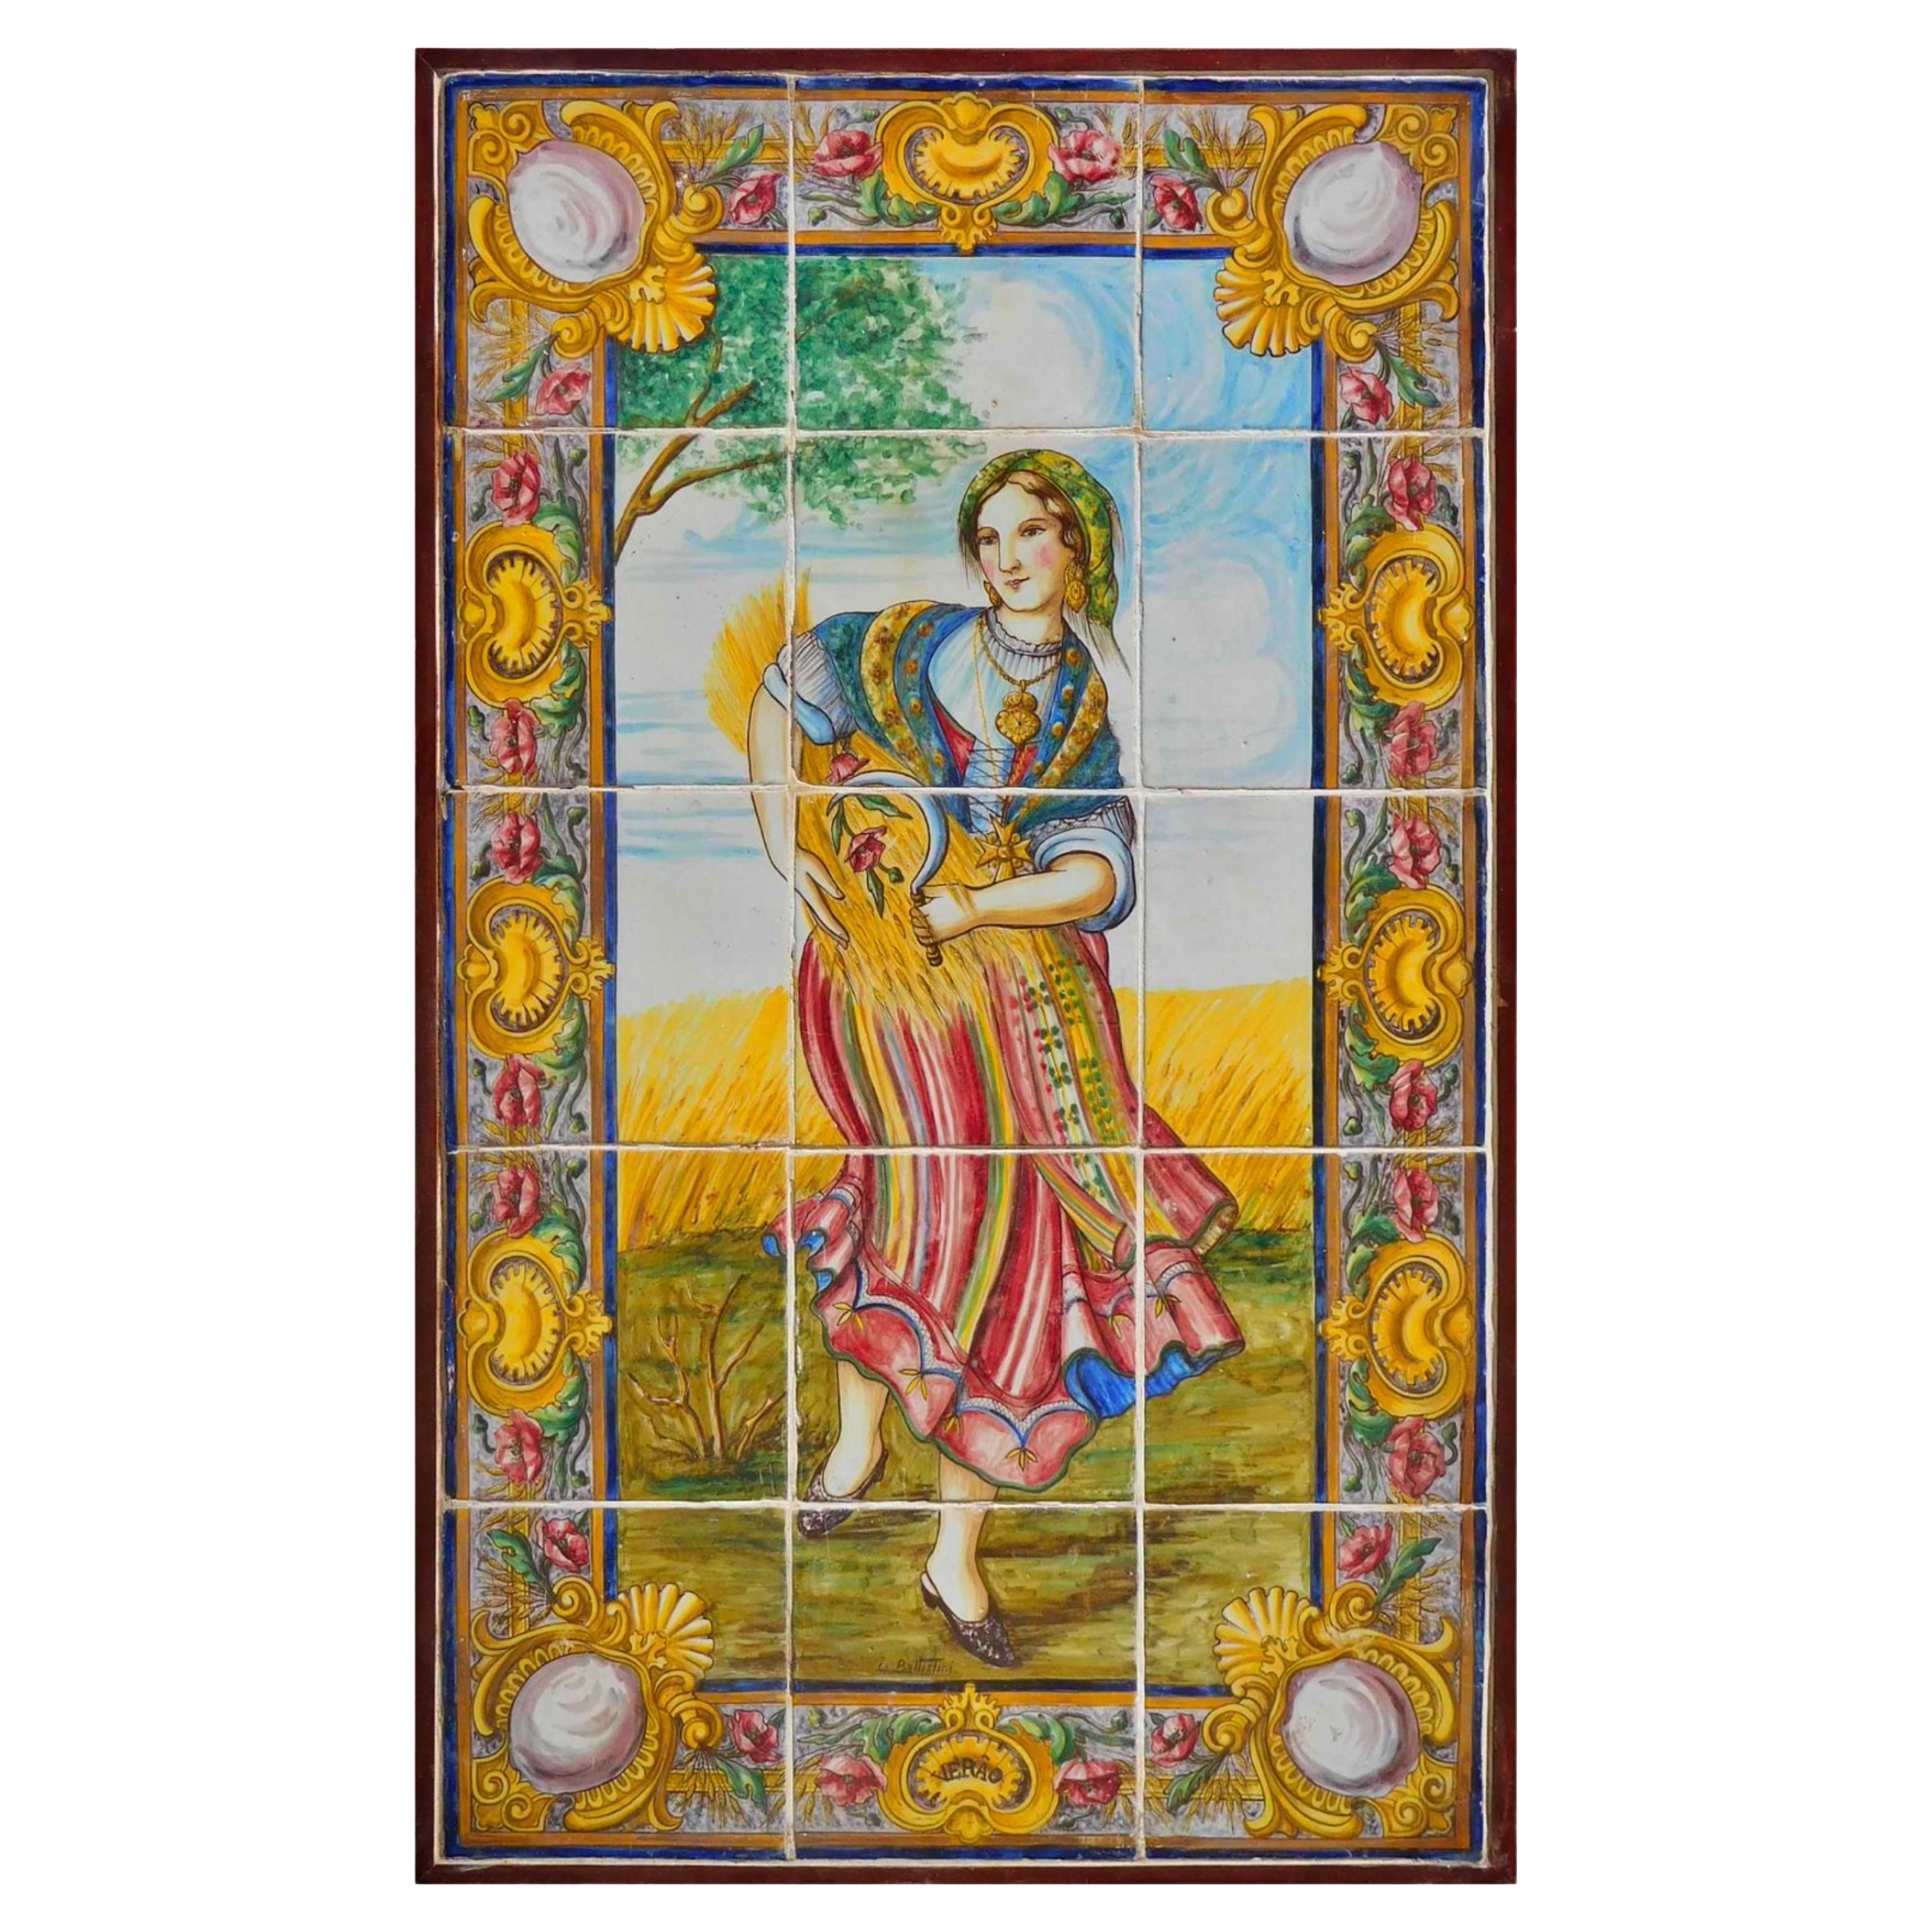 19th century Portuguese Tiles Panel "Autumn" For Sale